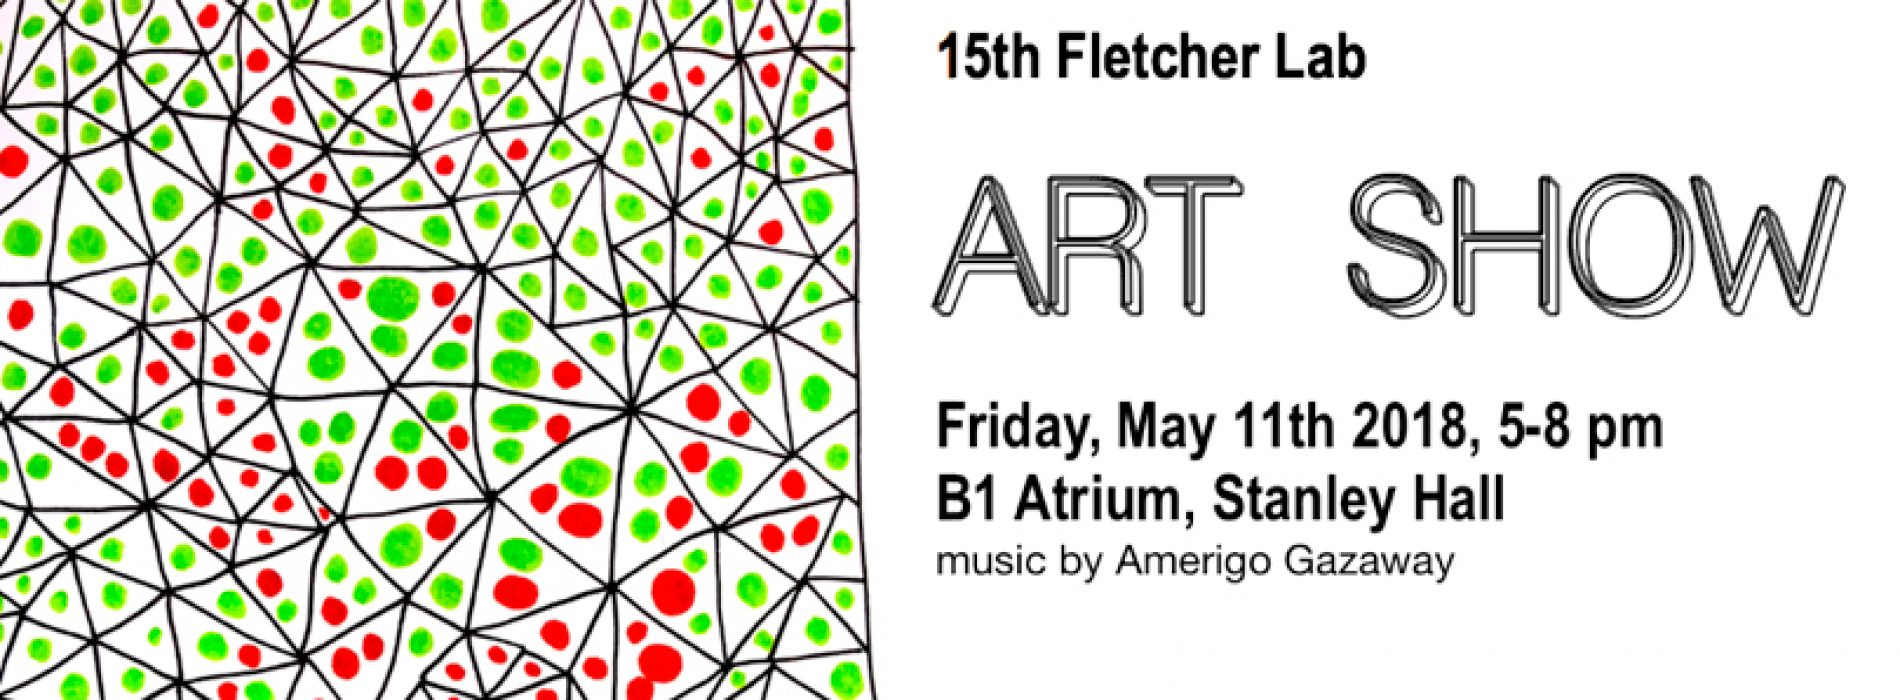 15th Annual Fletcher Lab Artshow!